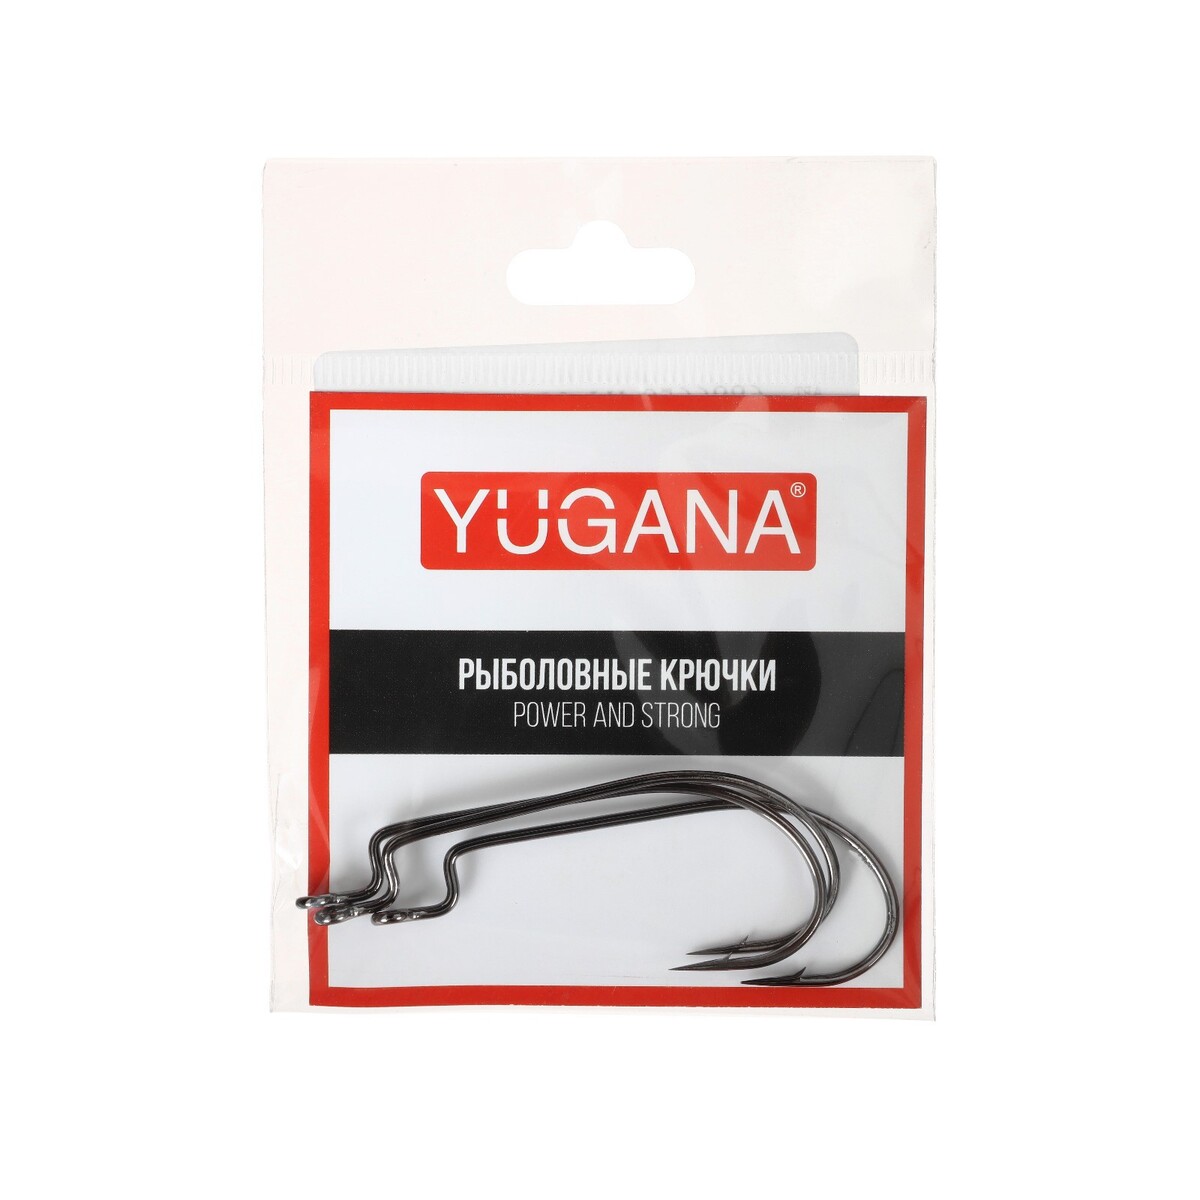   yugana o shaughnessy worm,   4/0, 3 